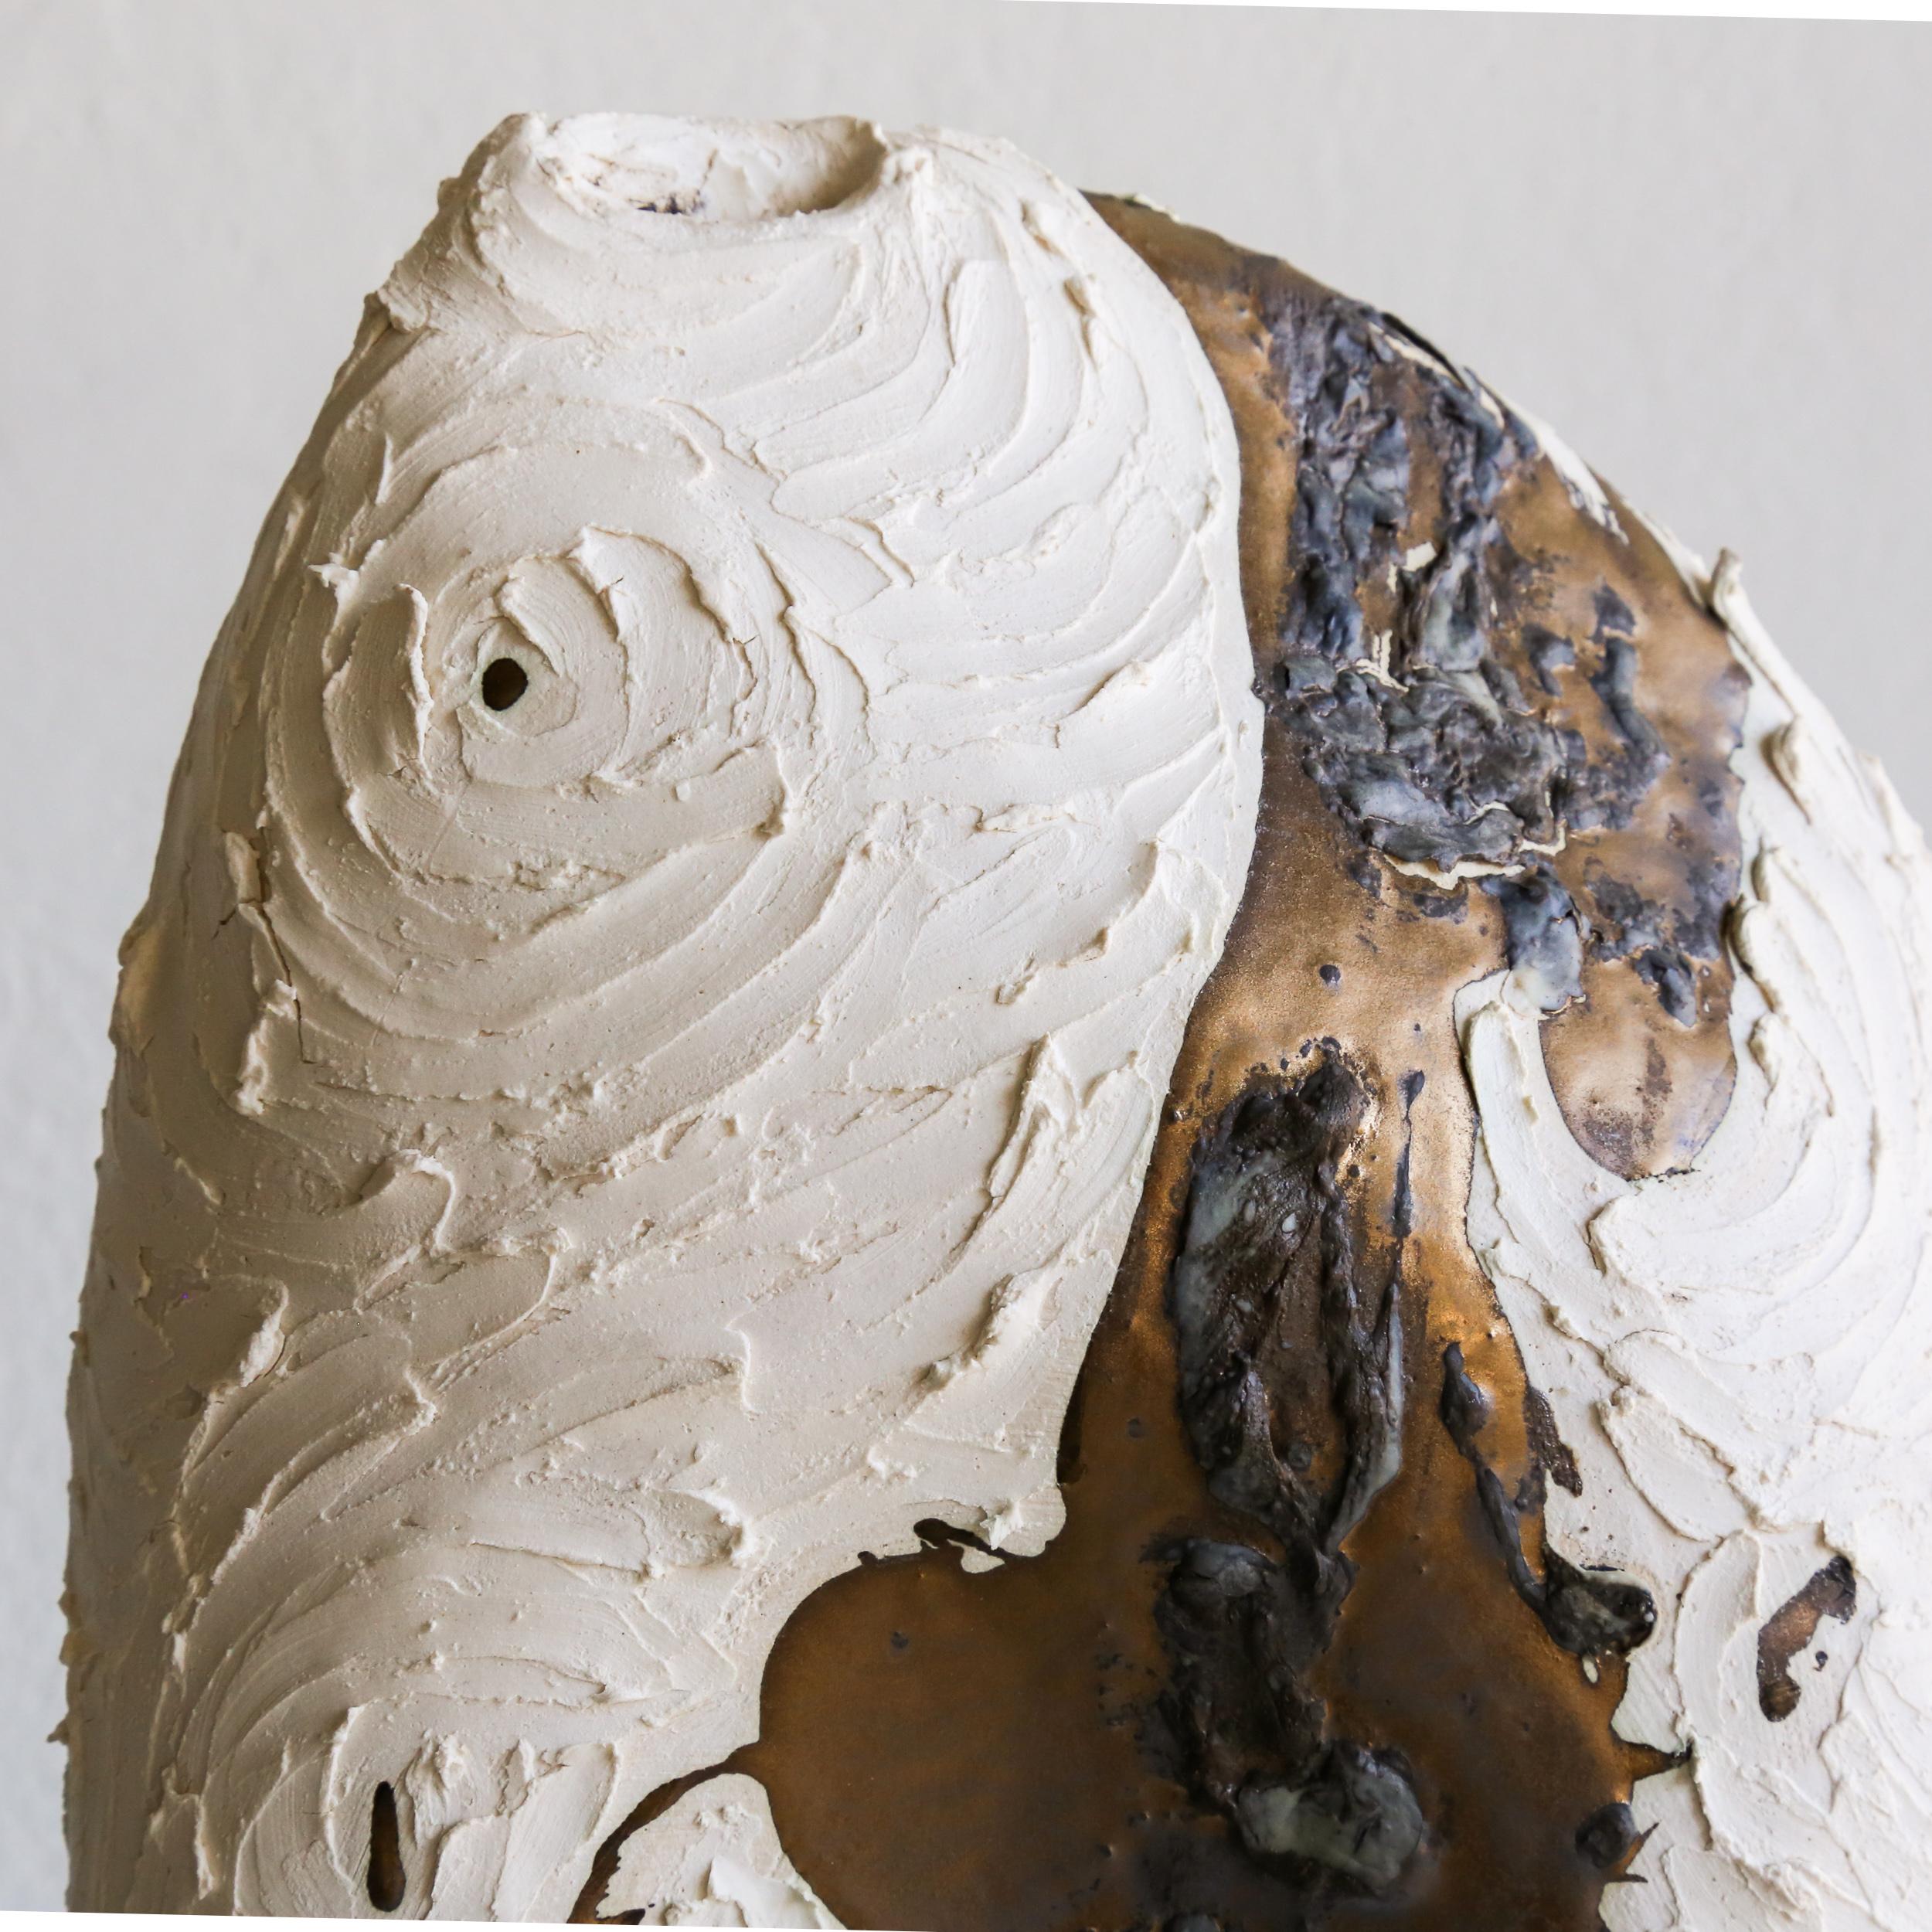 Des céramiques sculpturales originales fabriquées à la main pour enrichir l'esprit et nourrir l'âme.

Vase blanc et or n° 124
• Grès/Porcelaine, glaçure or métallisé

Déclaration de l'artiste :
En tant que sculpteur, j'utilise l'argile pour donner